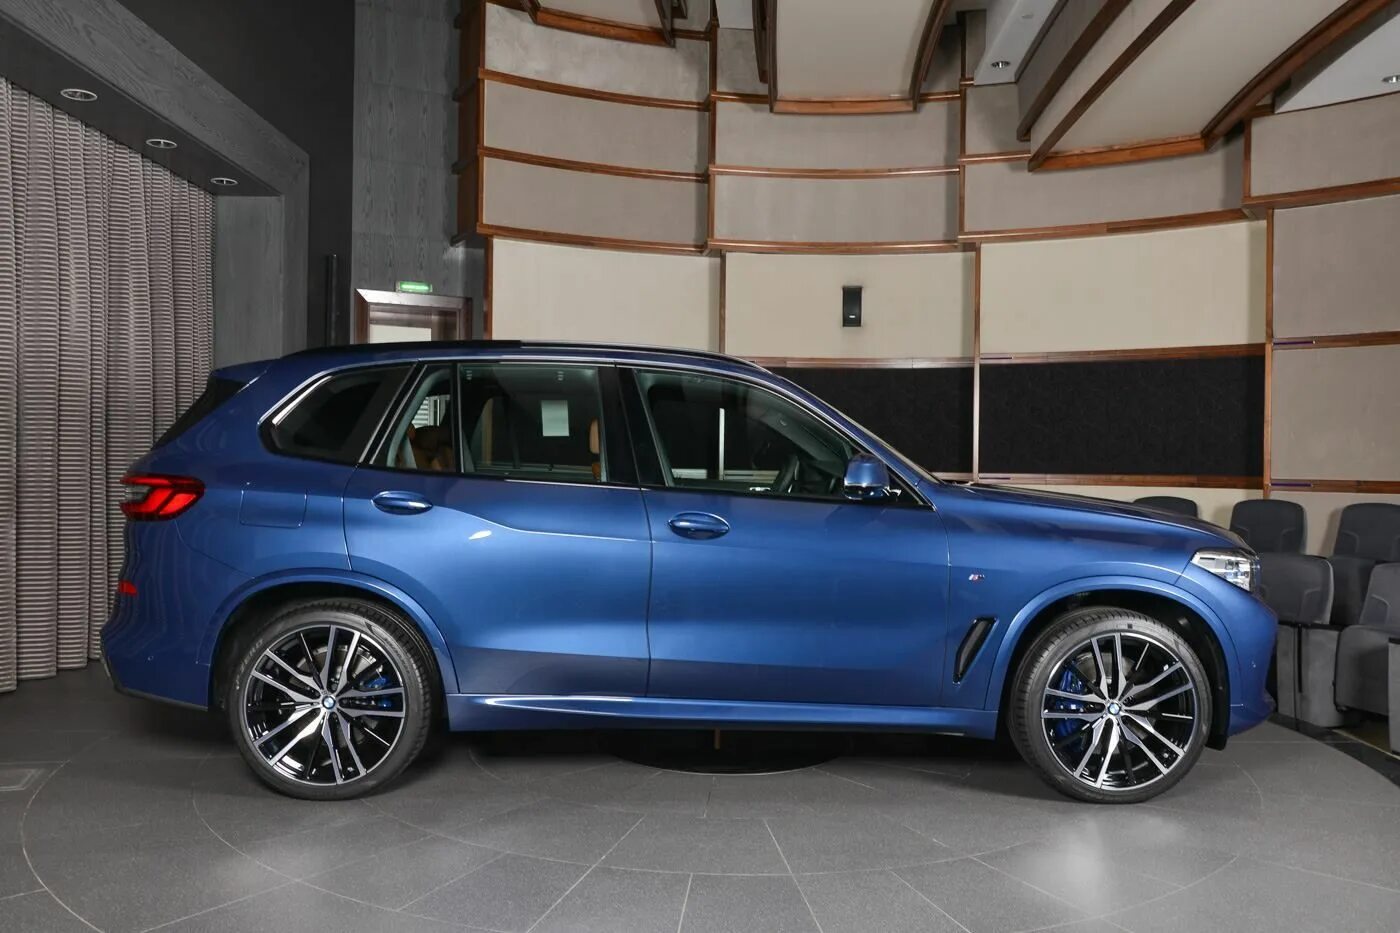 Bmw x5 цвета. BMW x5 g05 синий. BMW x5 g05 матовый синий. BMW g05 синего цвета x5. X5 BMW 2019 Blue.